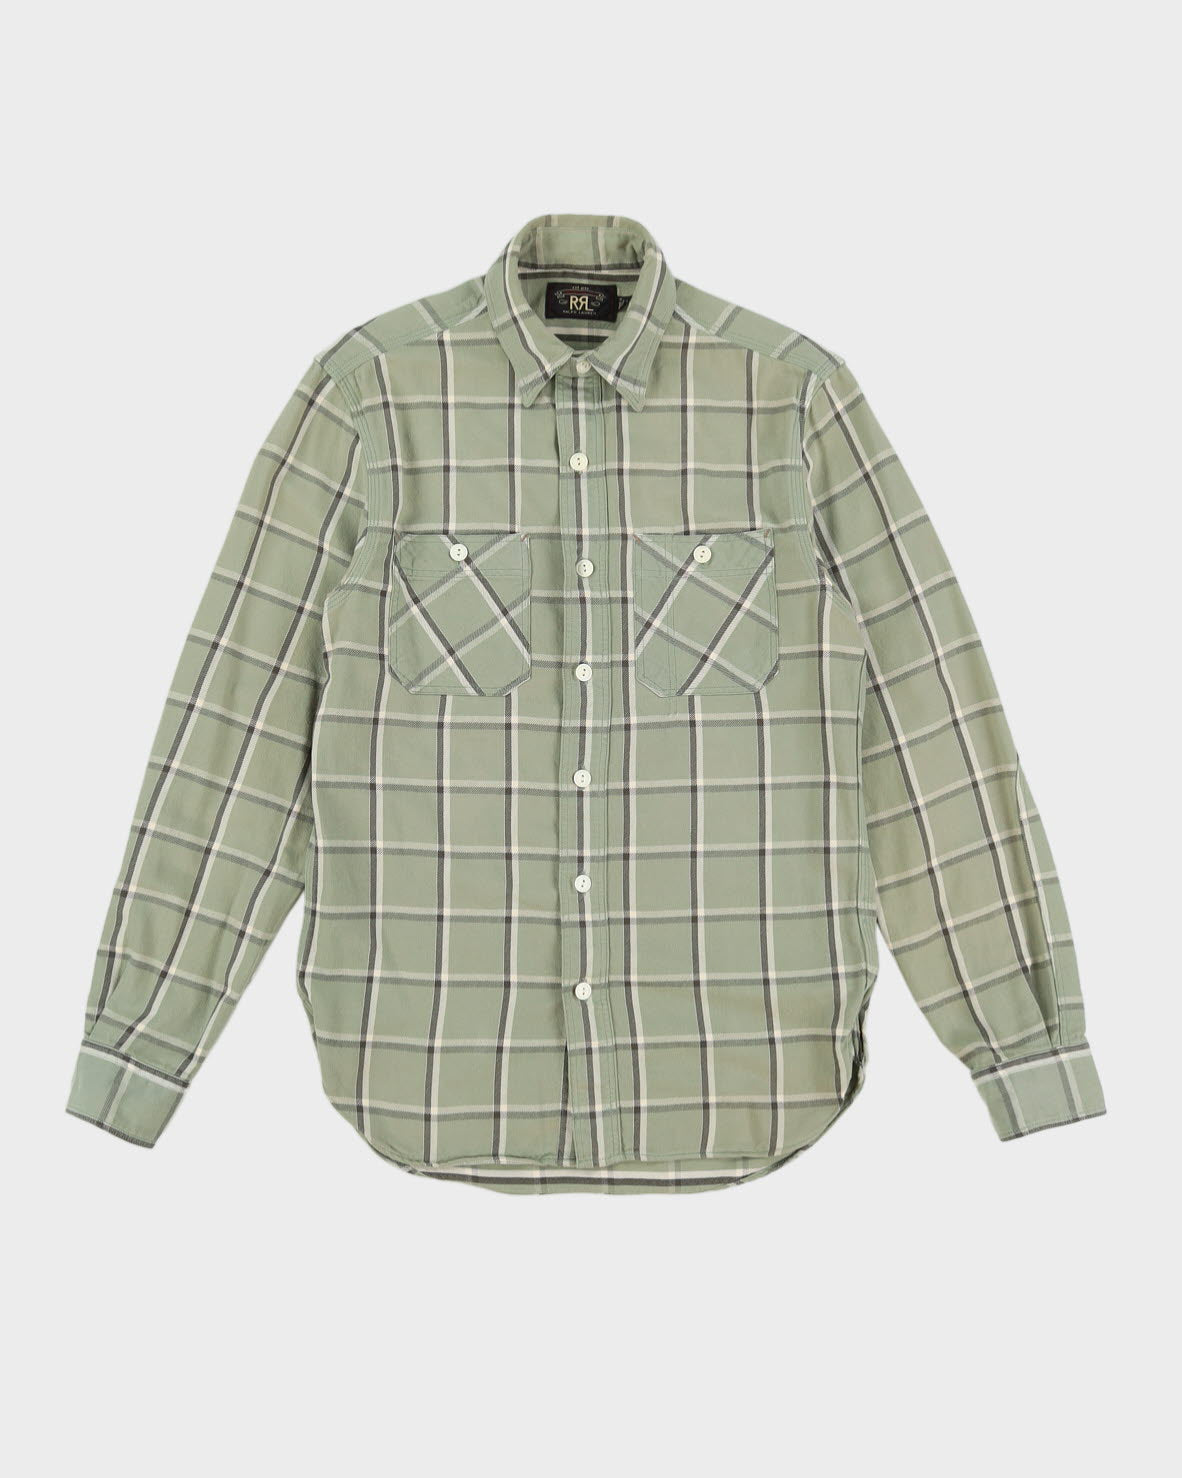 Ralph Lauren RRL Green Check Patterned Shirt - S